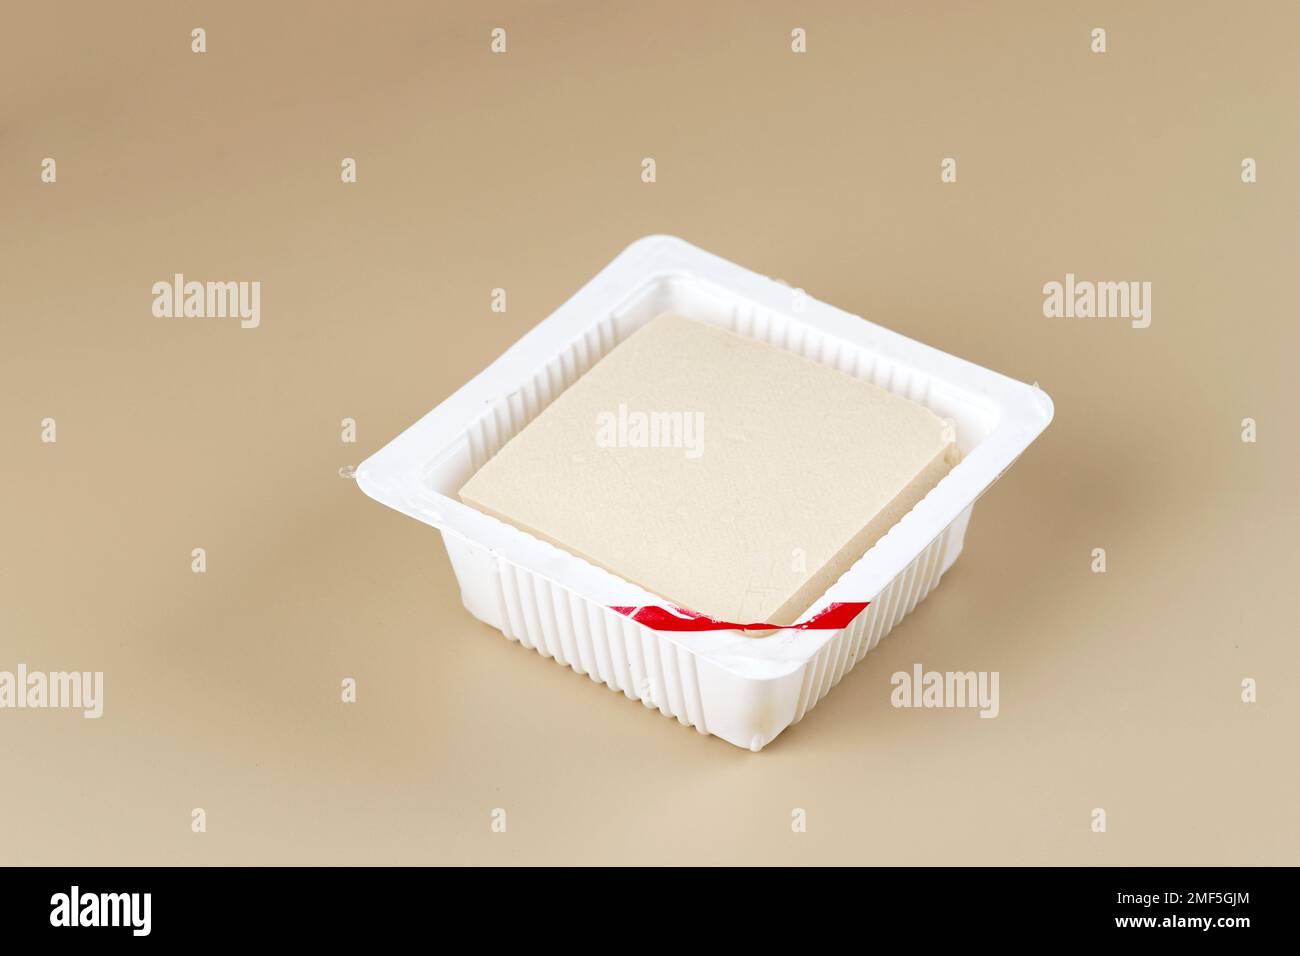 Seidenglatte Tofu oder Tahu Sutra auf Supermarkt-Plastikverpackungen. Isoliert auf cremefarbenem Hintergrund Stockfoto